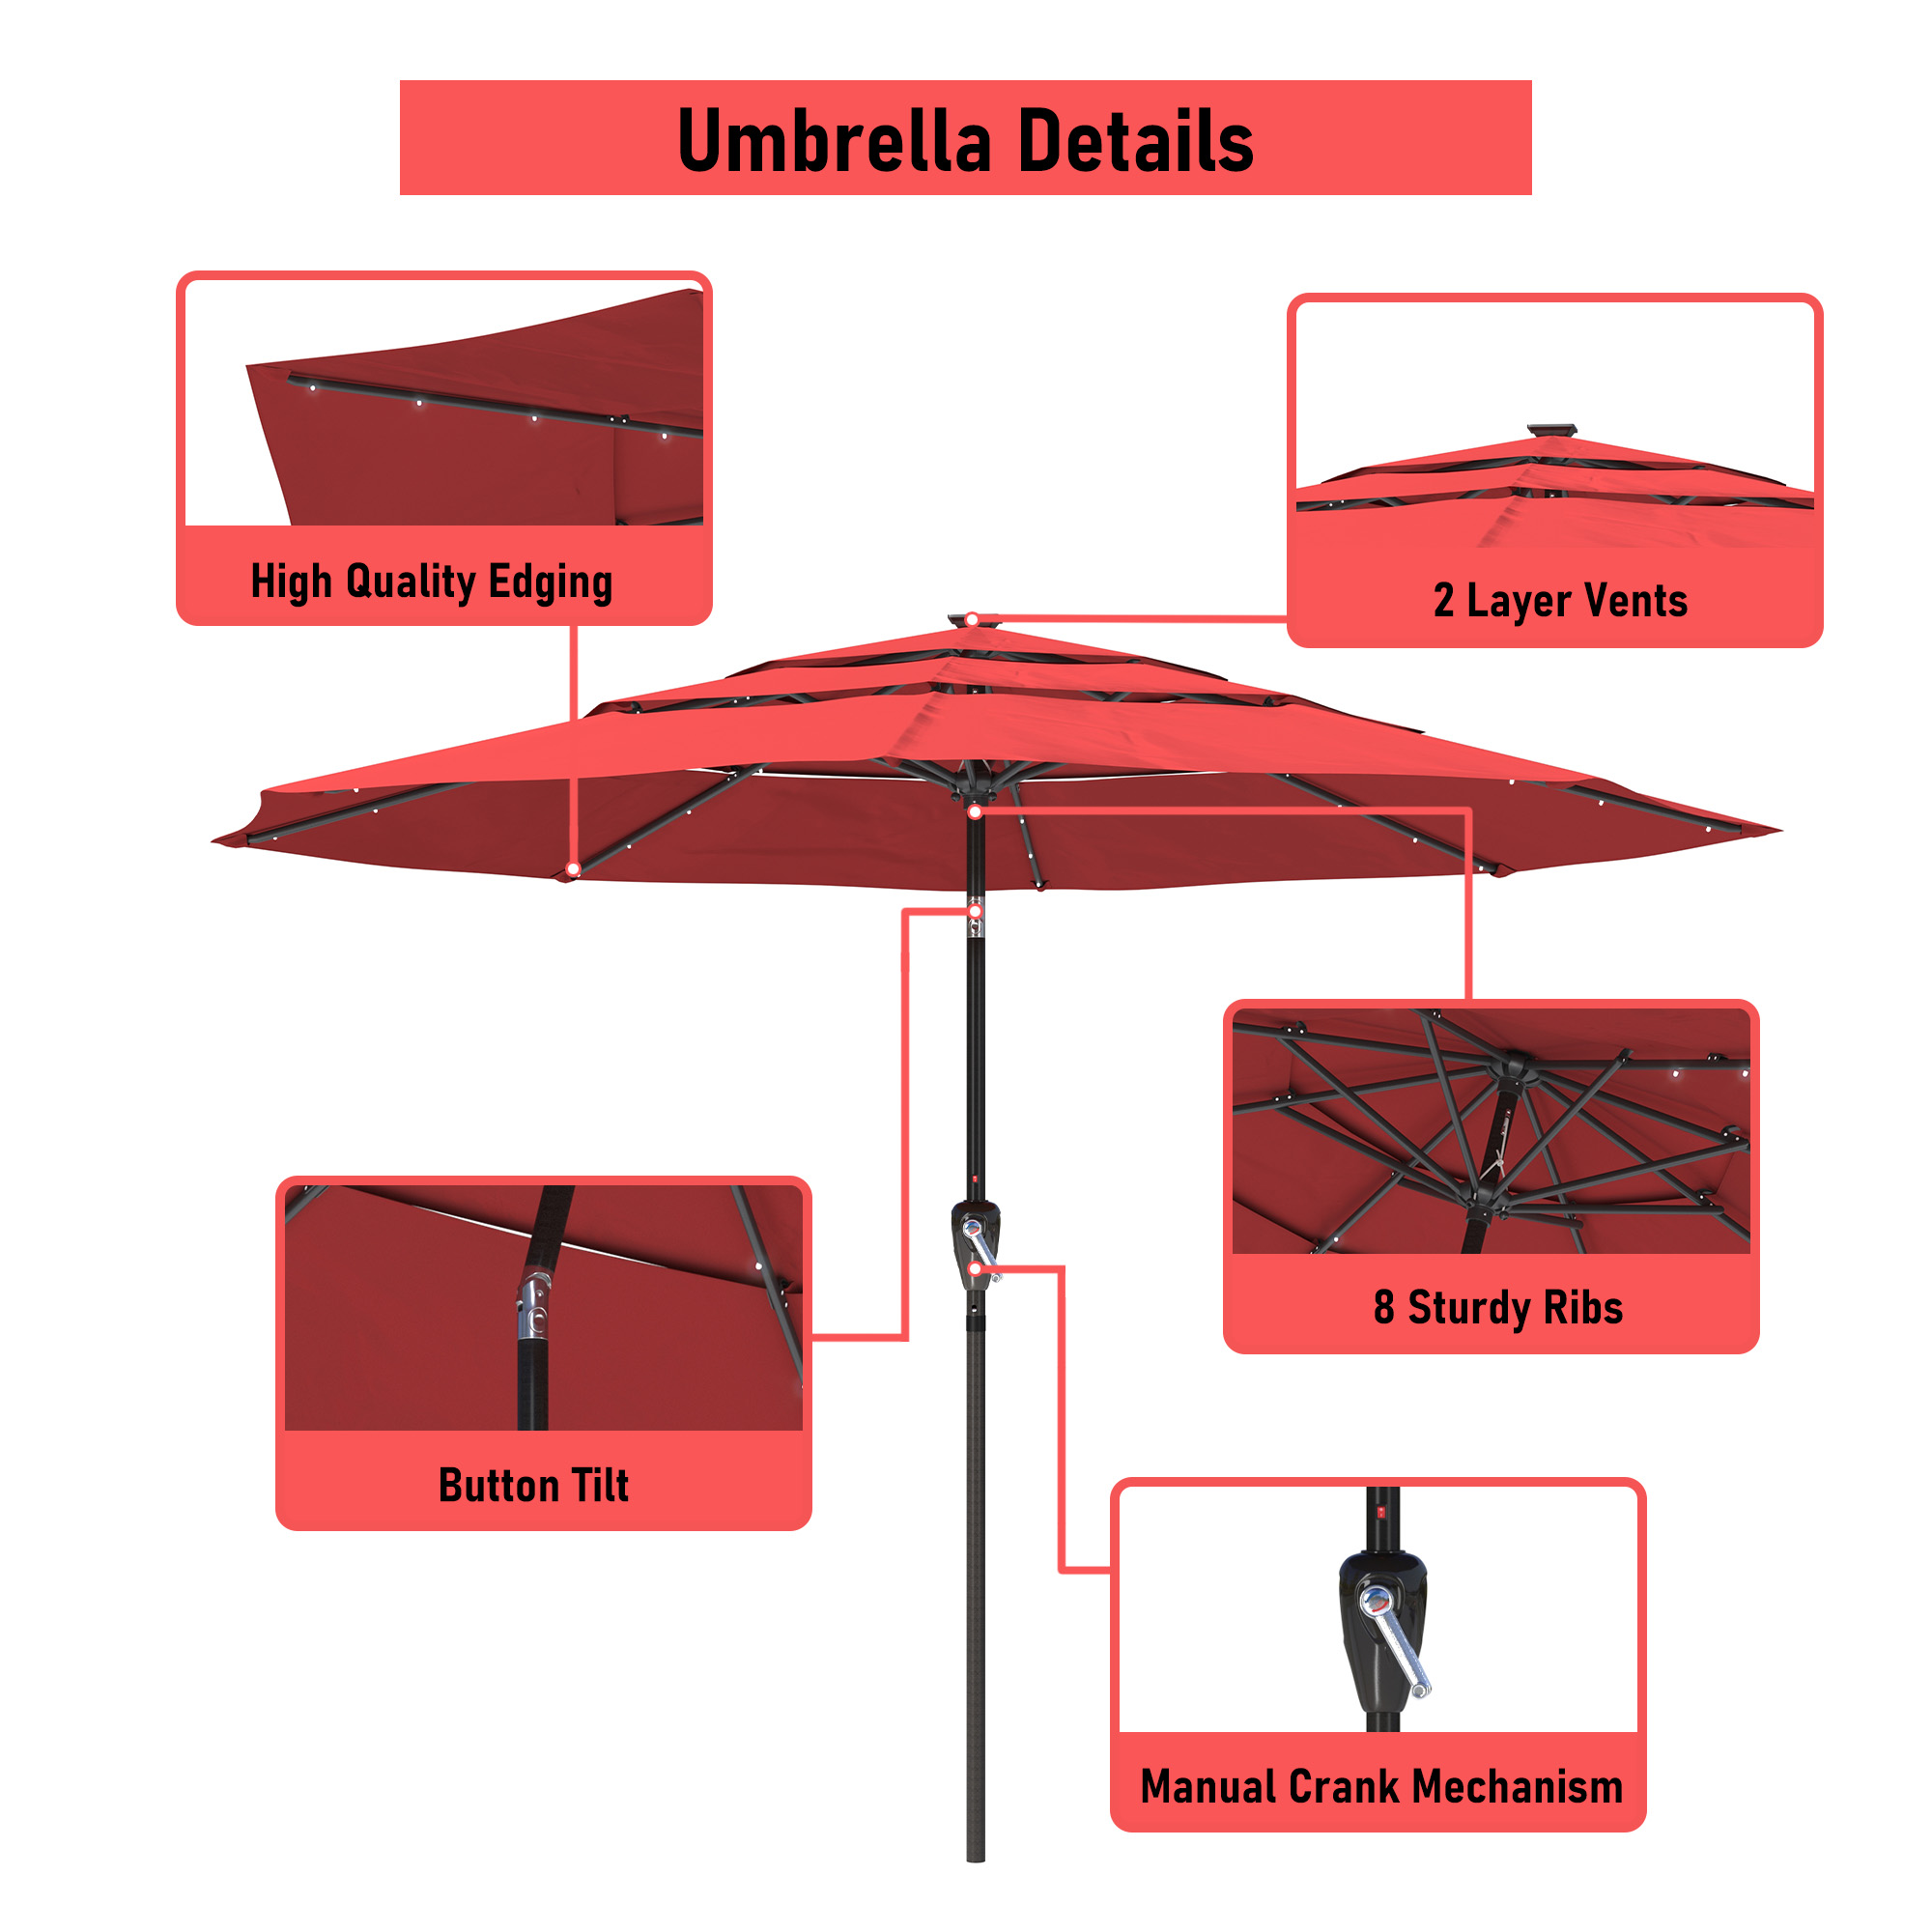 Mondawe 11-Ft Market Patio Umbrella with LED-Mondawe